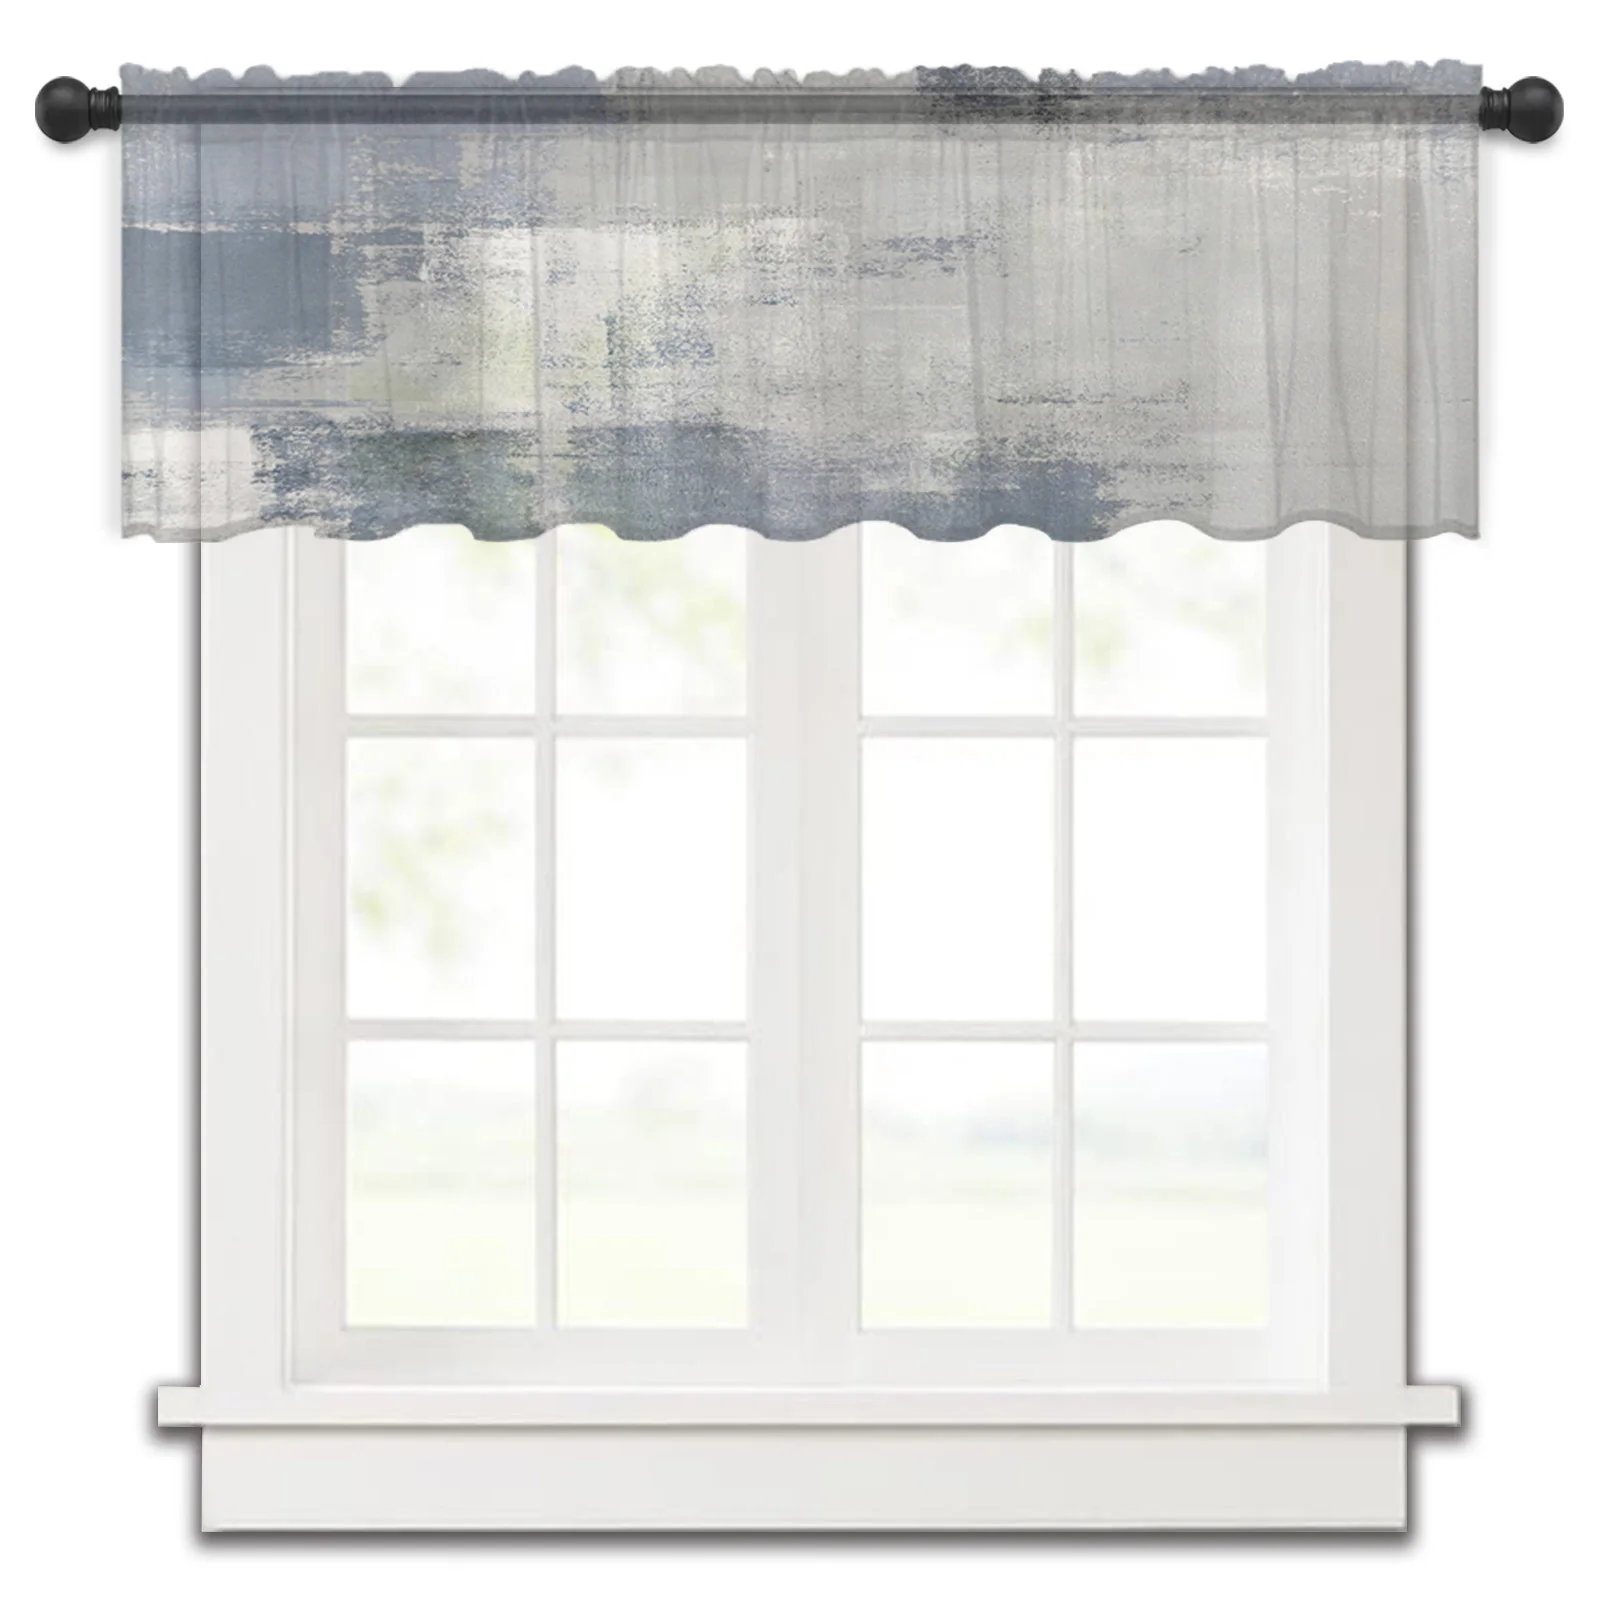 

Геометрическая абстрактная картина маслом текстура маленькая оконная занавеска балдахин прозрачная Короткая занавеска для спальни домашний декор вуаль занавески